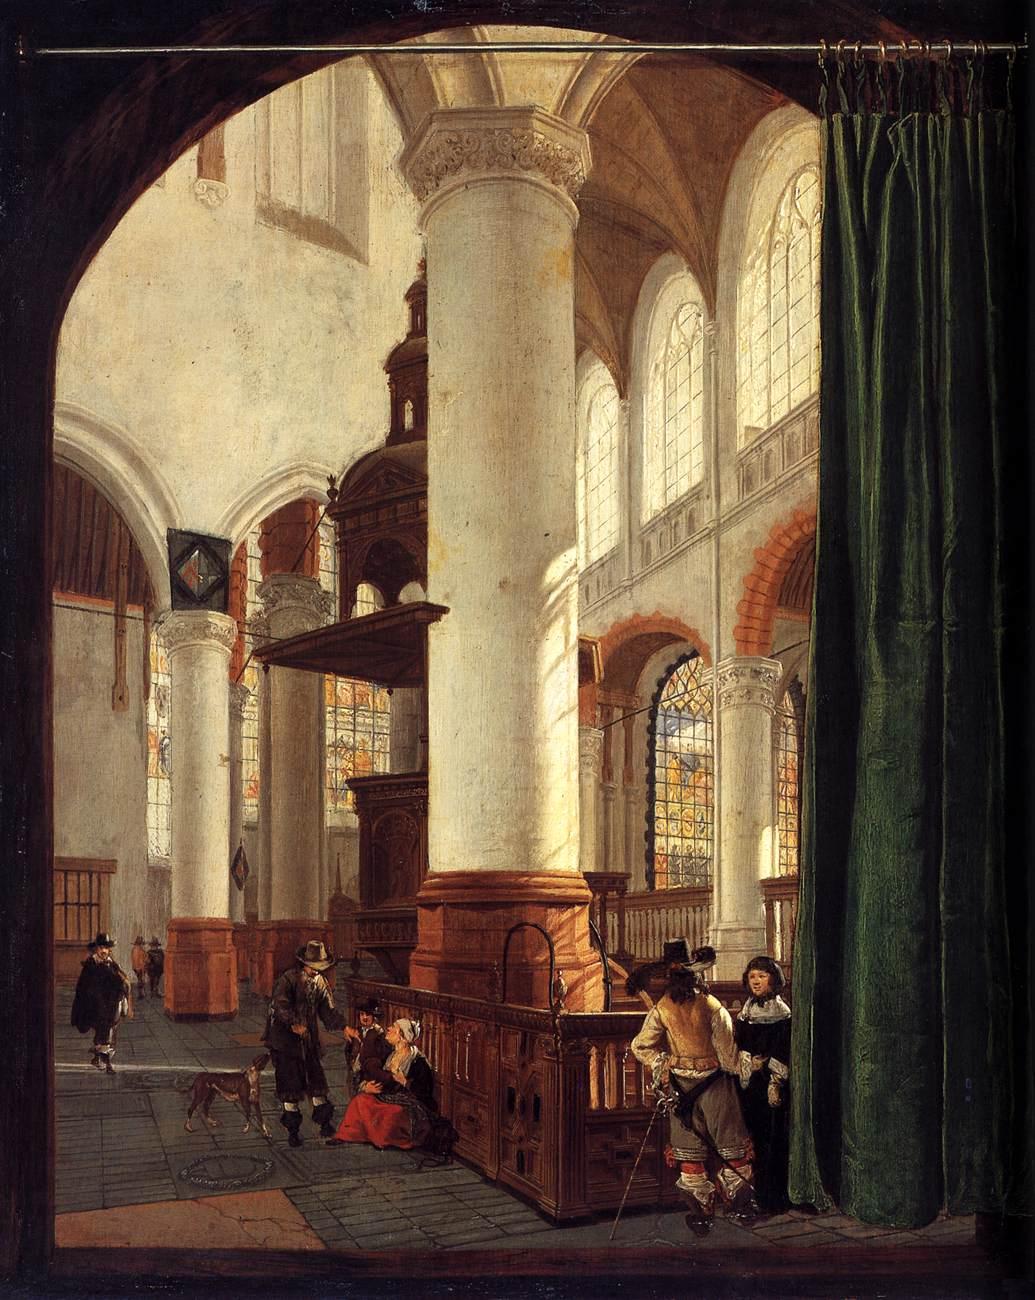 Gerard Houckgeest, Interieur van de Oude Kerk te Delft met de kansel uit 1548, 1651, olieverf op paneel, 49x41cm, Rijksmuseum Amsterdam (afbeelding Web Gallery of Art).